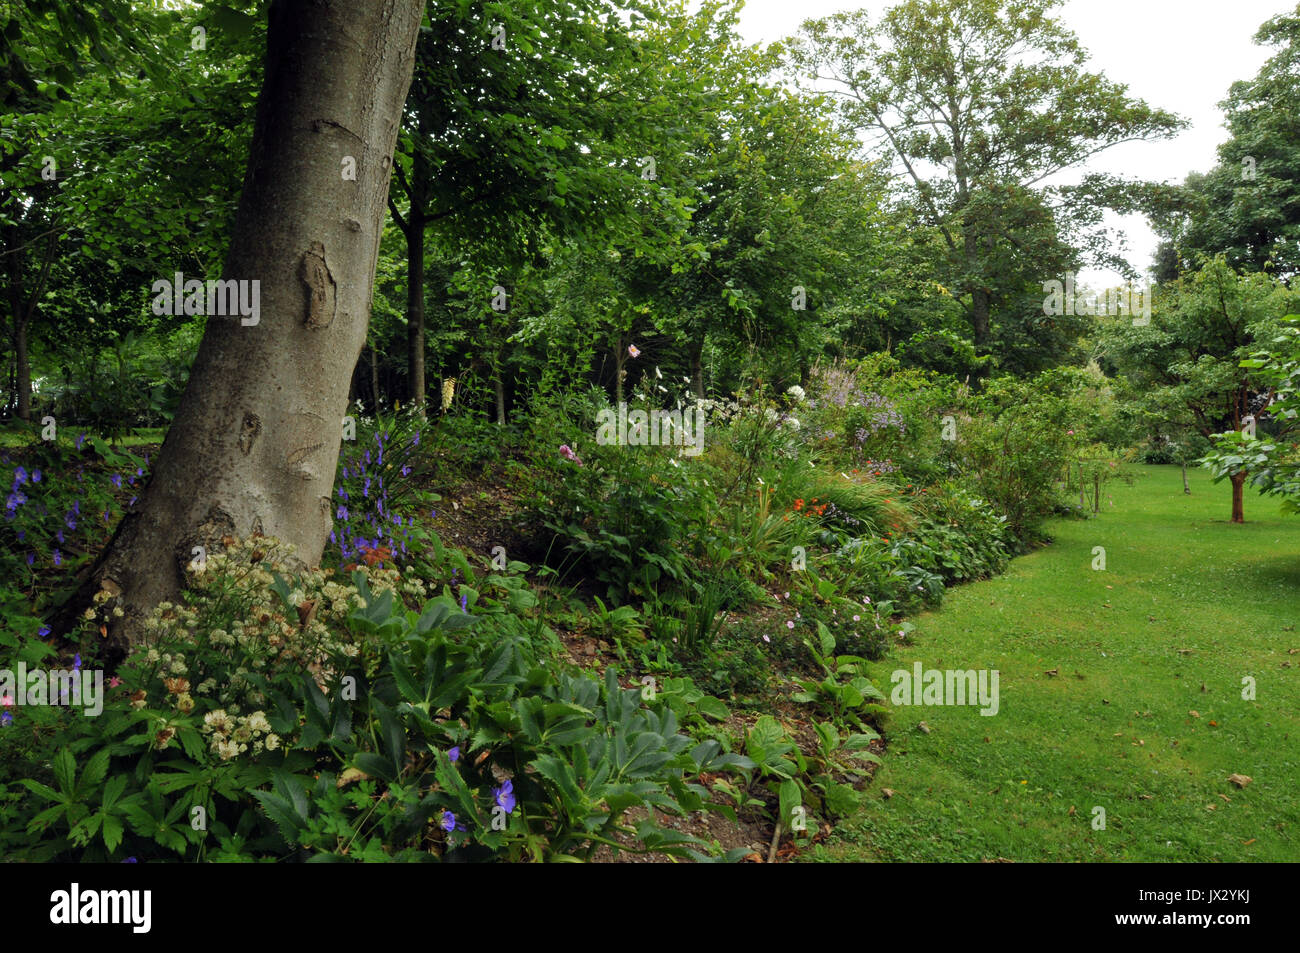 Los jardines y avenidas de árboles en Prideaux Place manor house en Padstow, en el norte de la costa de Cornish. Foto de stock